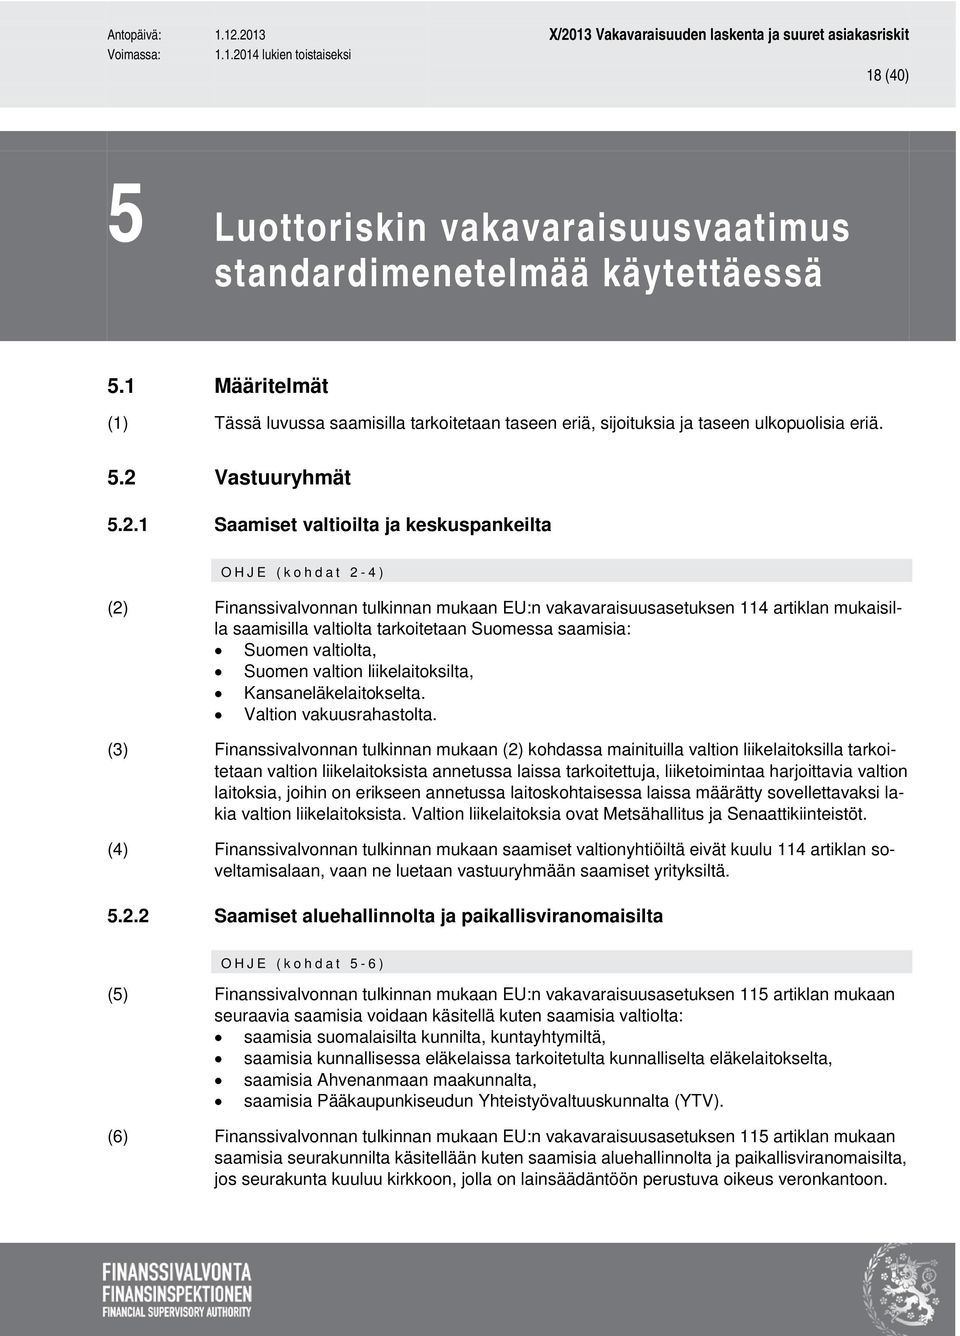 saamisia: Suomen valtiolta, Suomen valtion liikelaitoksilta, Kansaneläkelaitokselta. Valtion vakuusrahastolta.